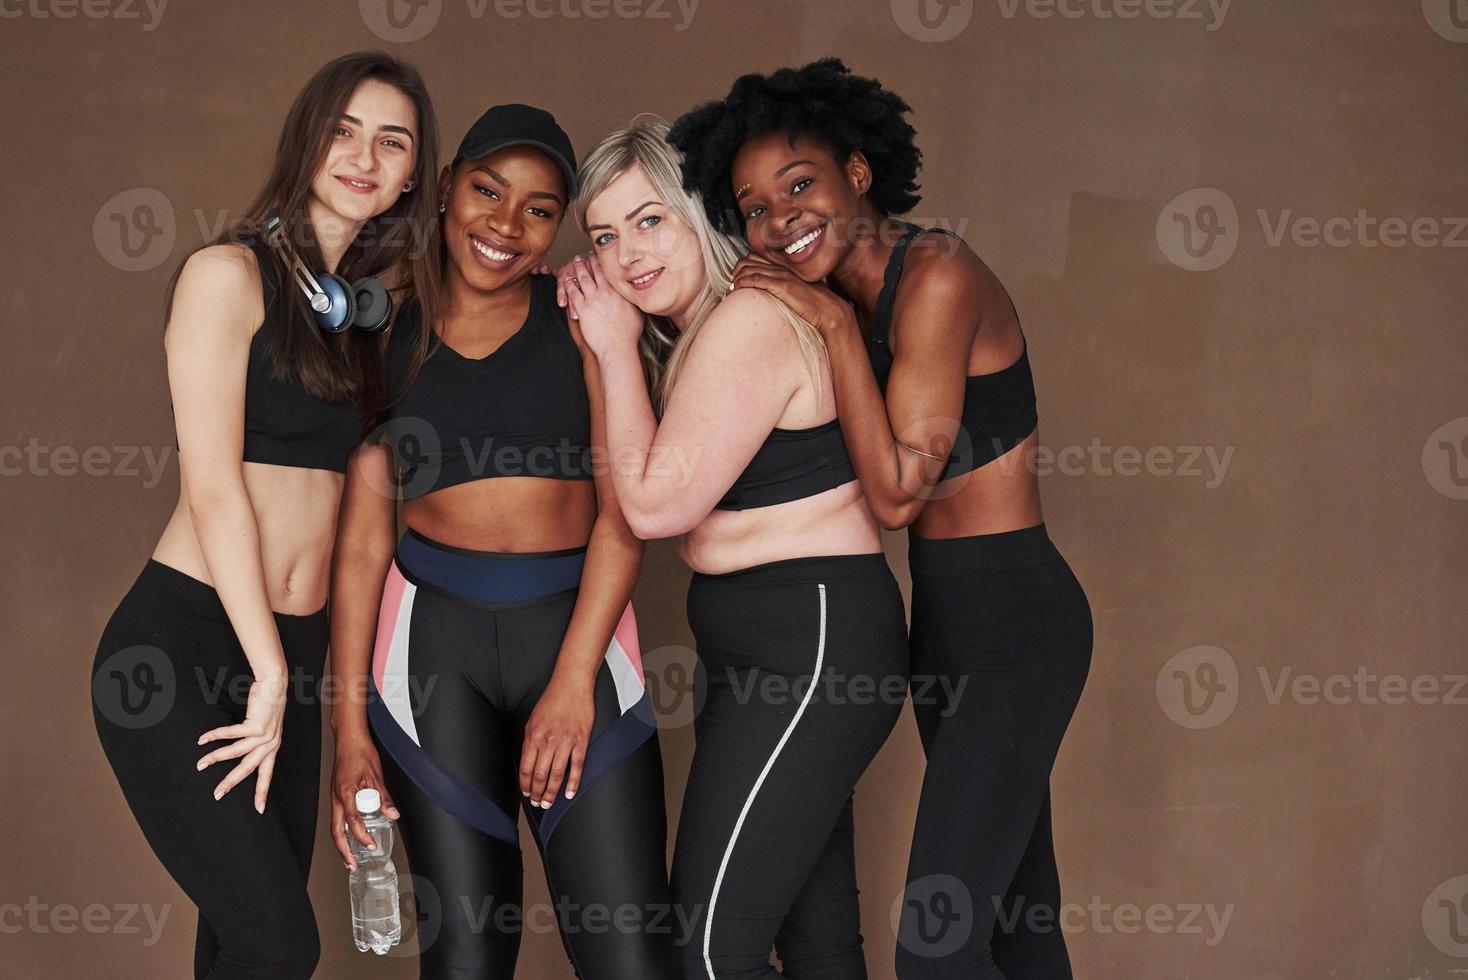 gostando de estar junto. grupo de mulheres multiétnicas em pé no estúdio contra fundo marrom foto